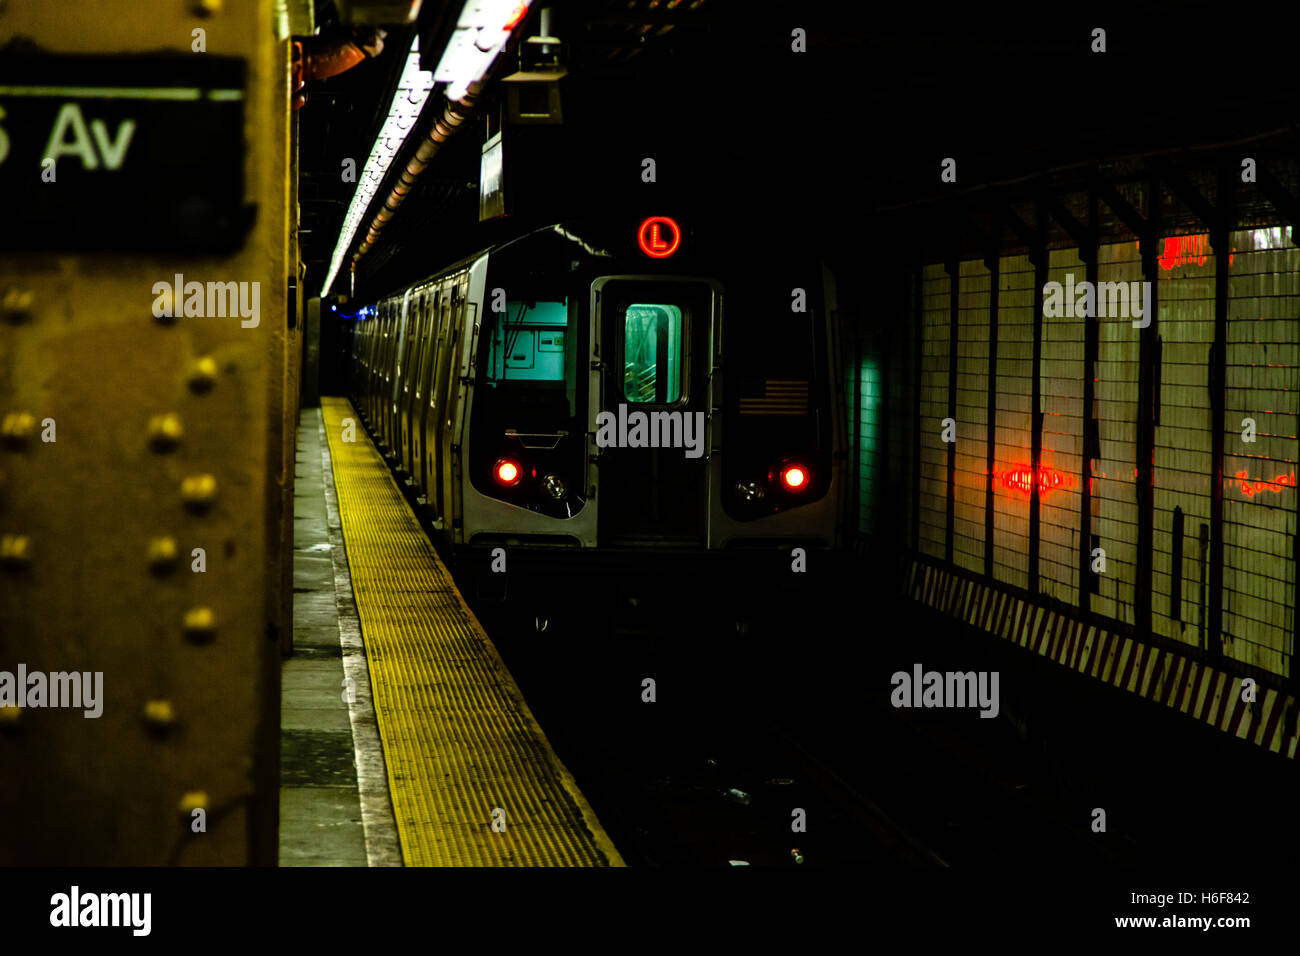 La metropolitana treno arrivando alla piattaforma del 6 Av. stazione. Foto Stock